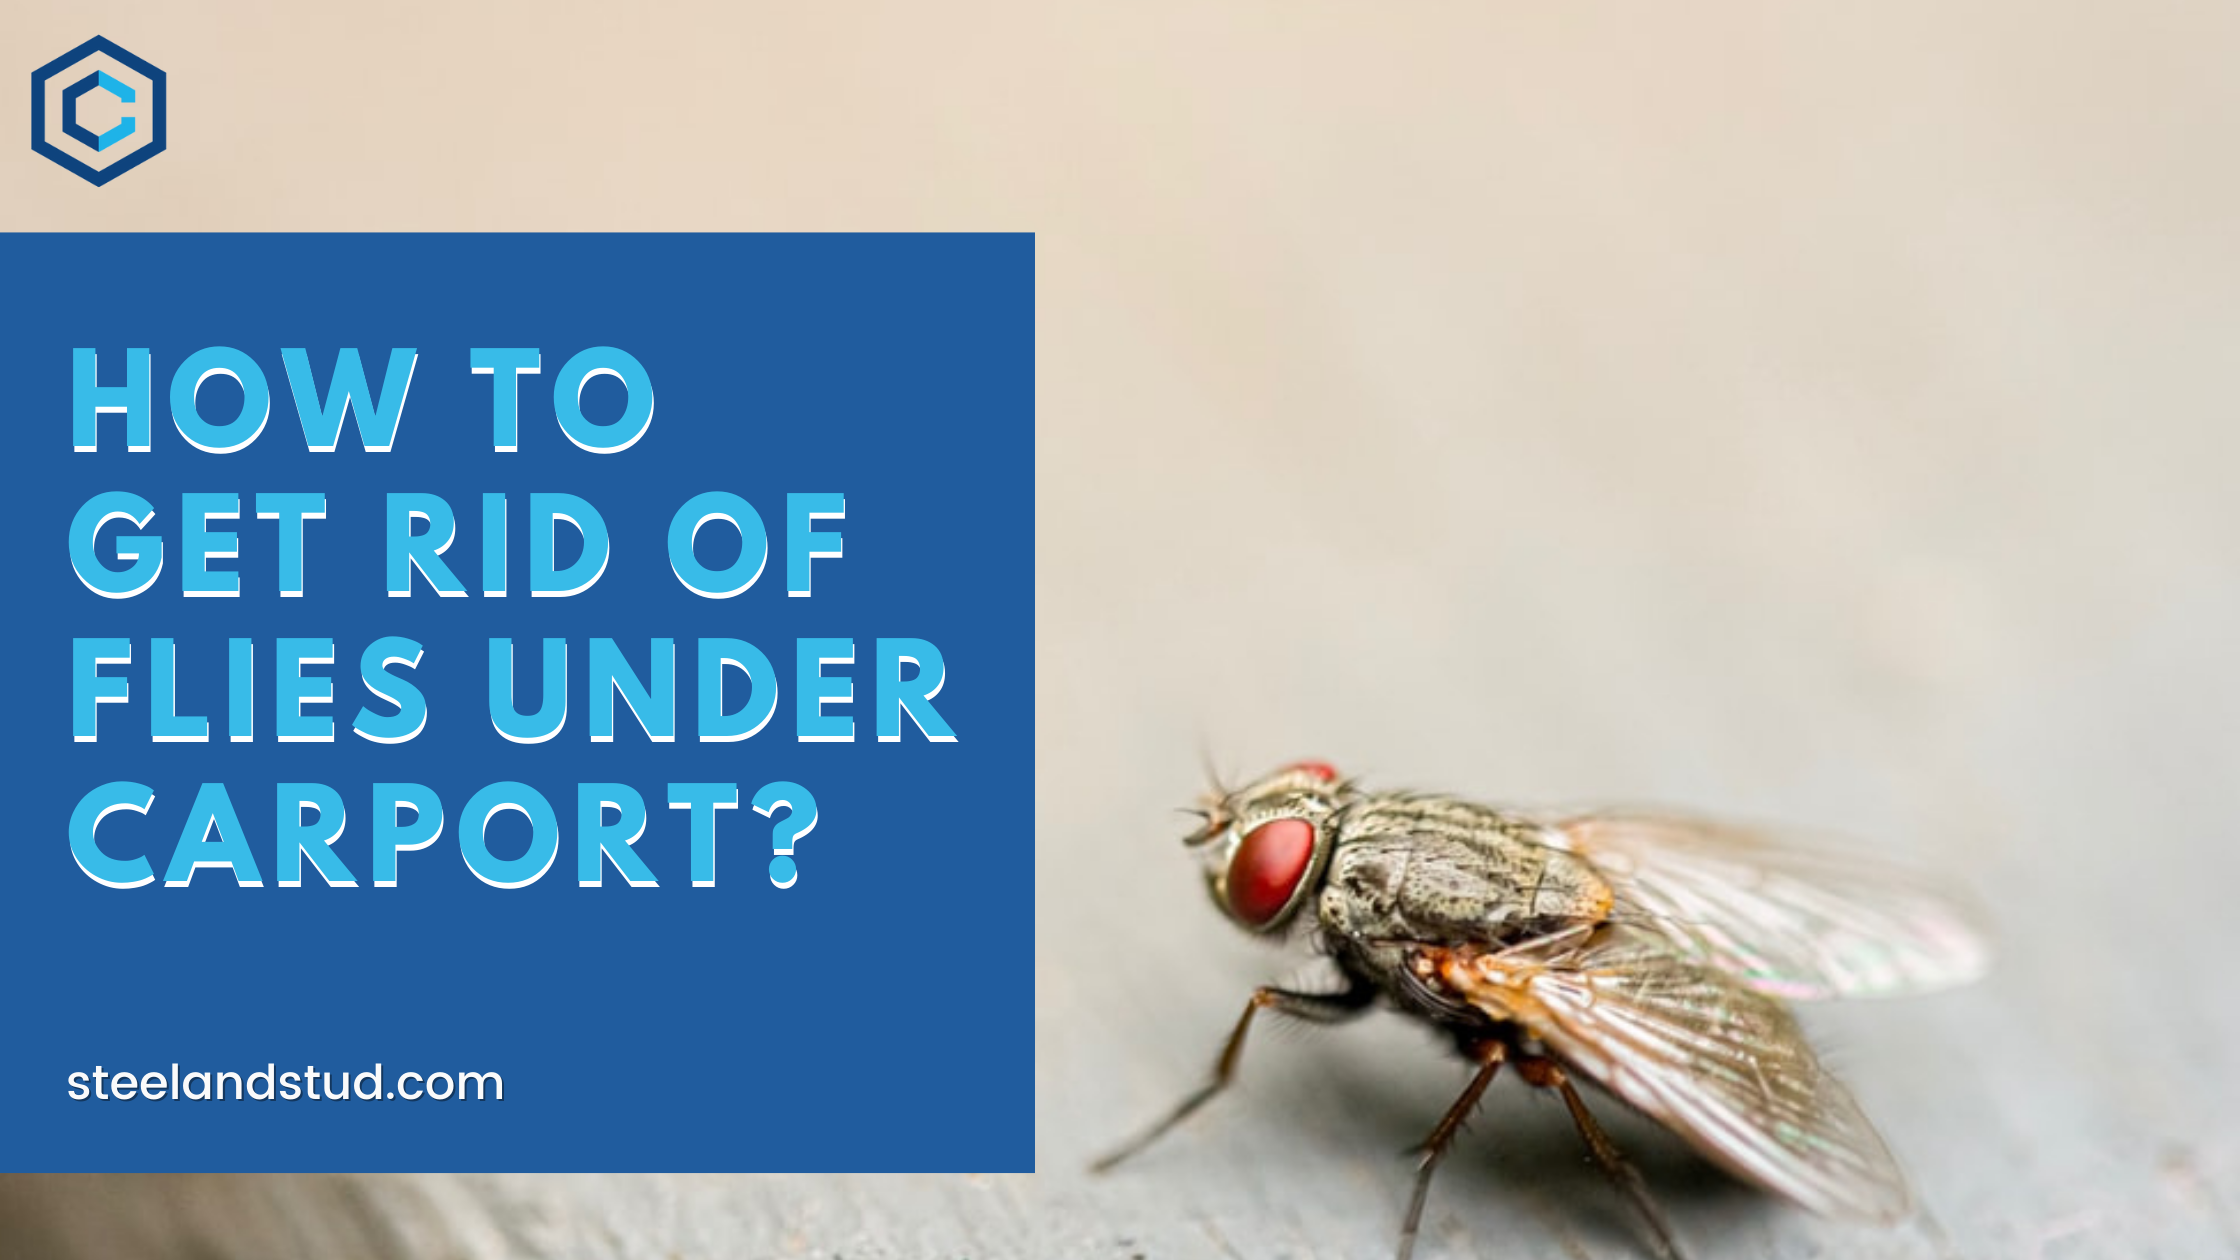 How To Get Rid of Flies Under Carport?